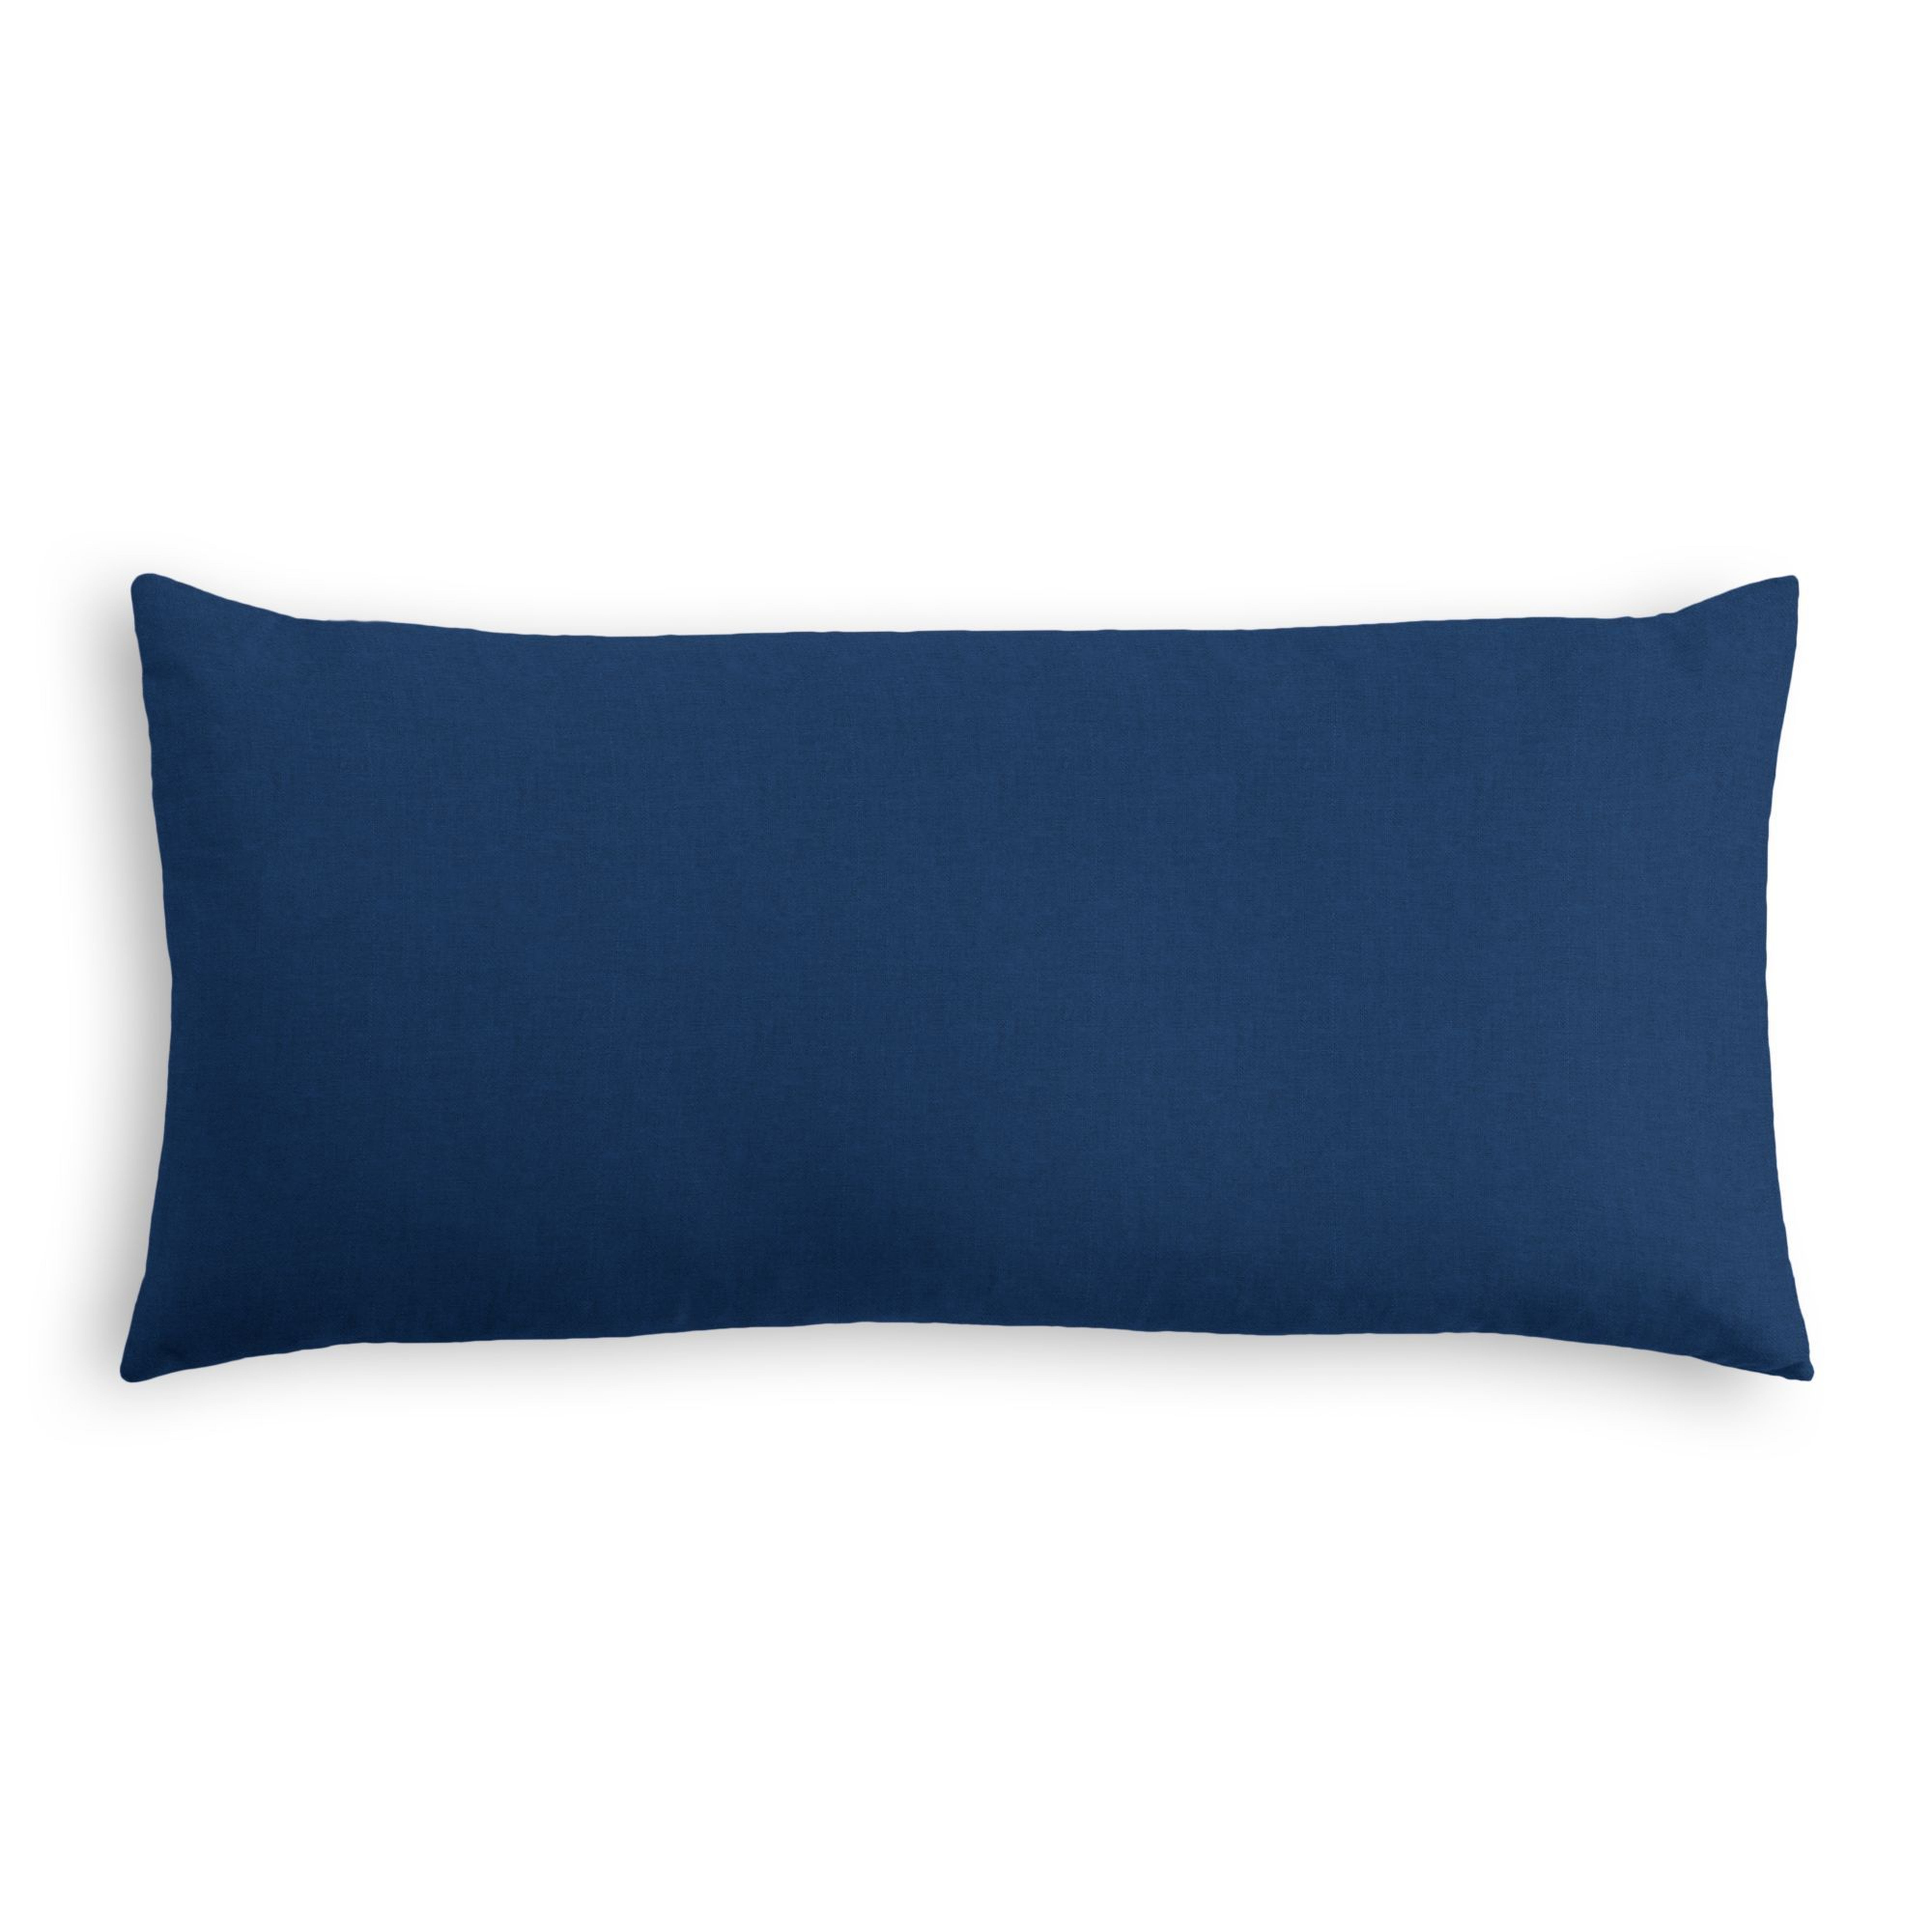 Classic Linen Lumbar Pillow, Navy Blue, 18" x 12" - Havenly Essentials